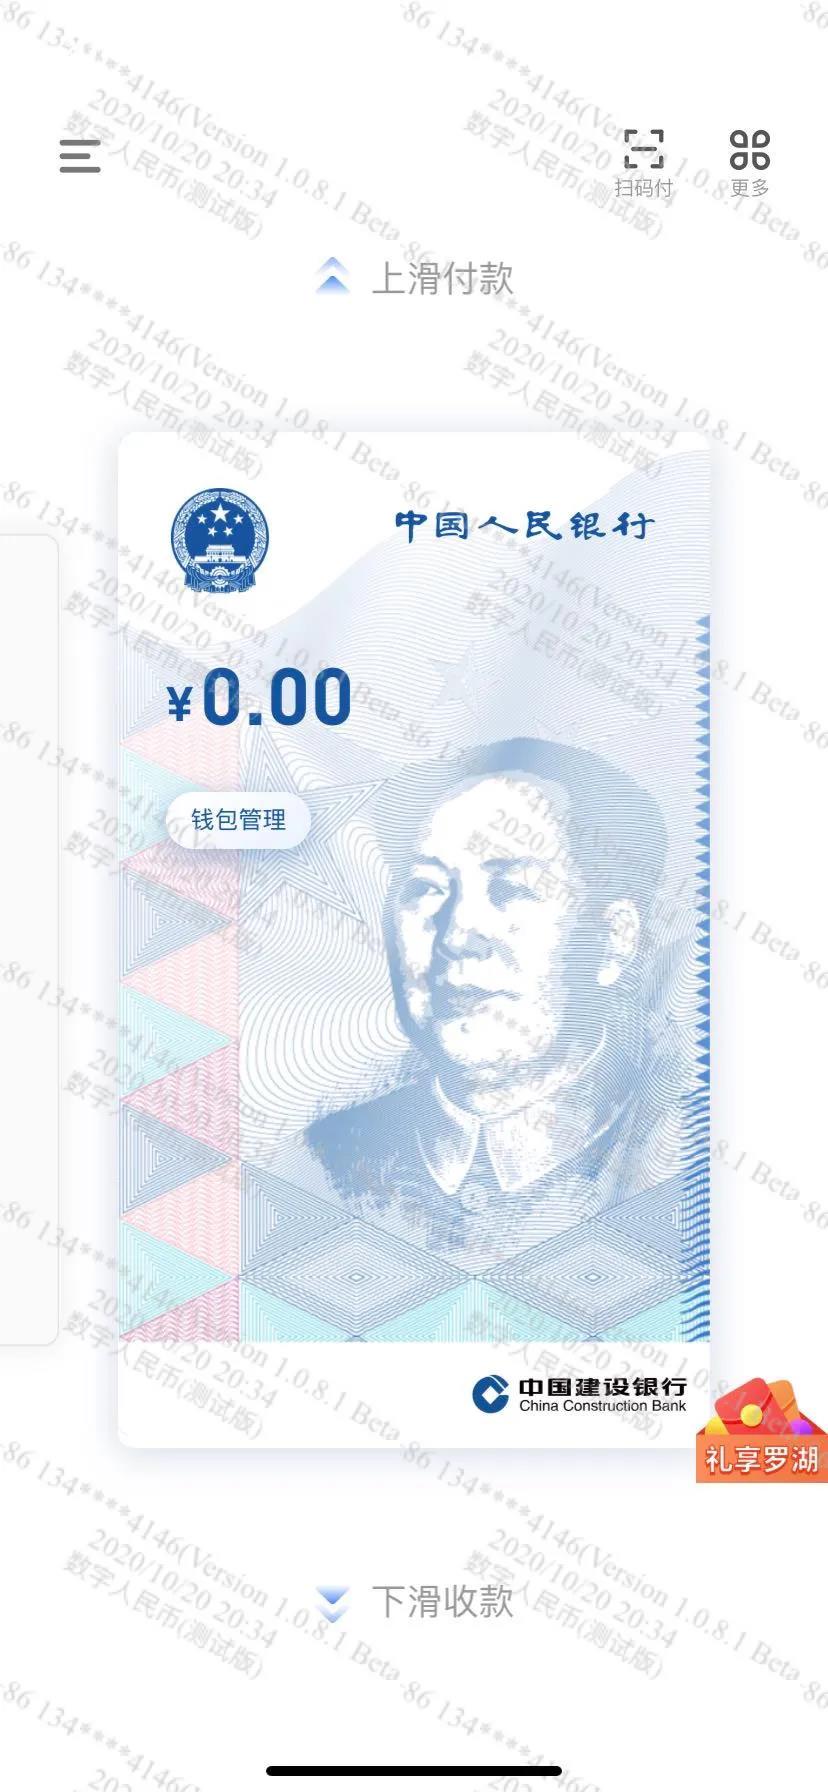 深圳的数字货币“红包”试验，谁最受益？